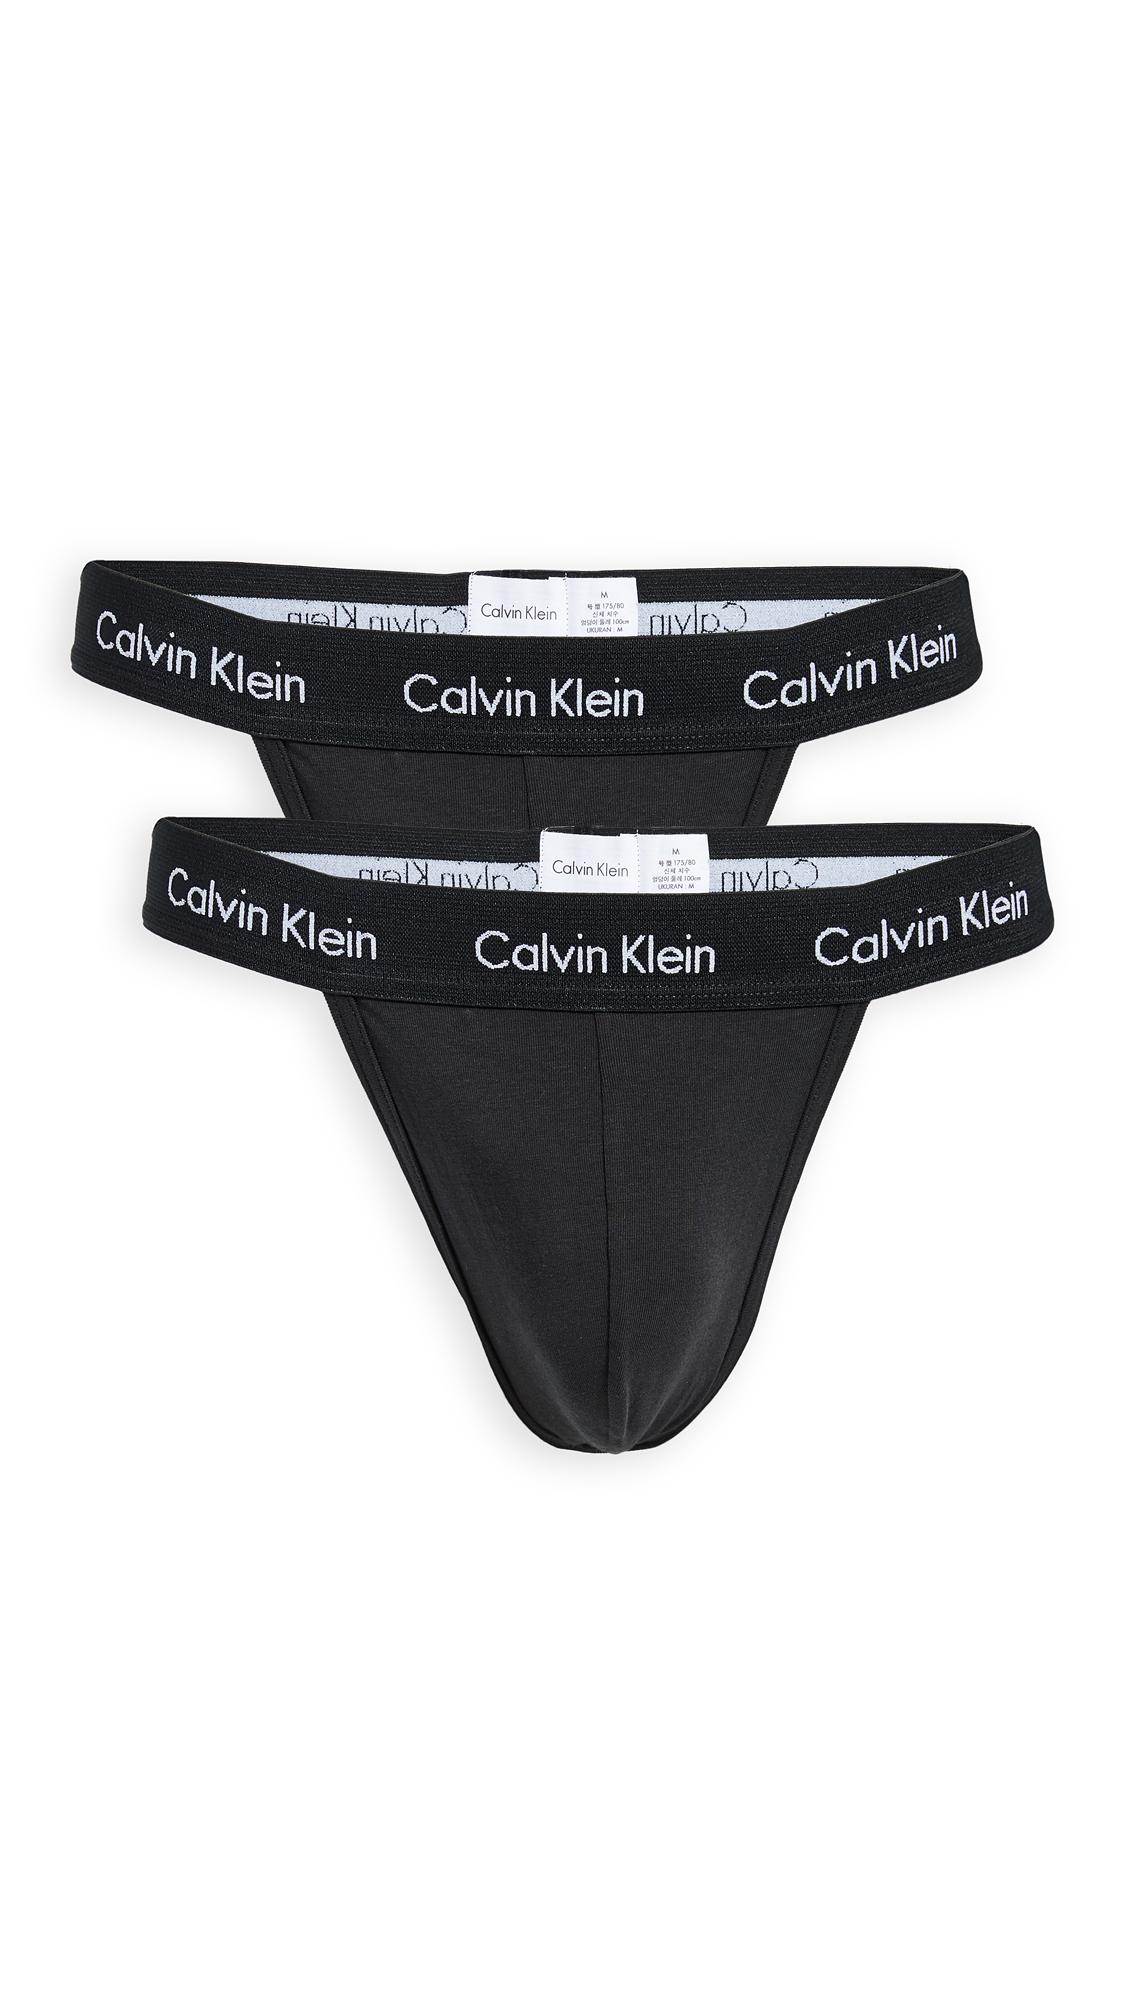 Calvin Klein Underwear Cotton Stretch 2 Pack Thongs in Black/Black (Black)  for Men - Lyst